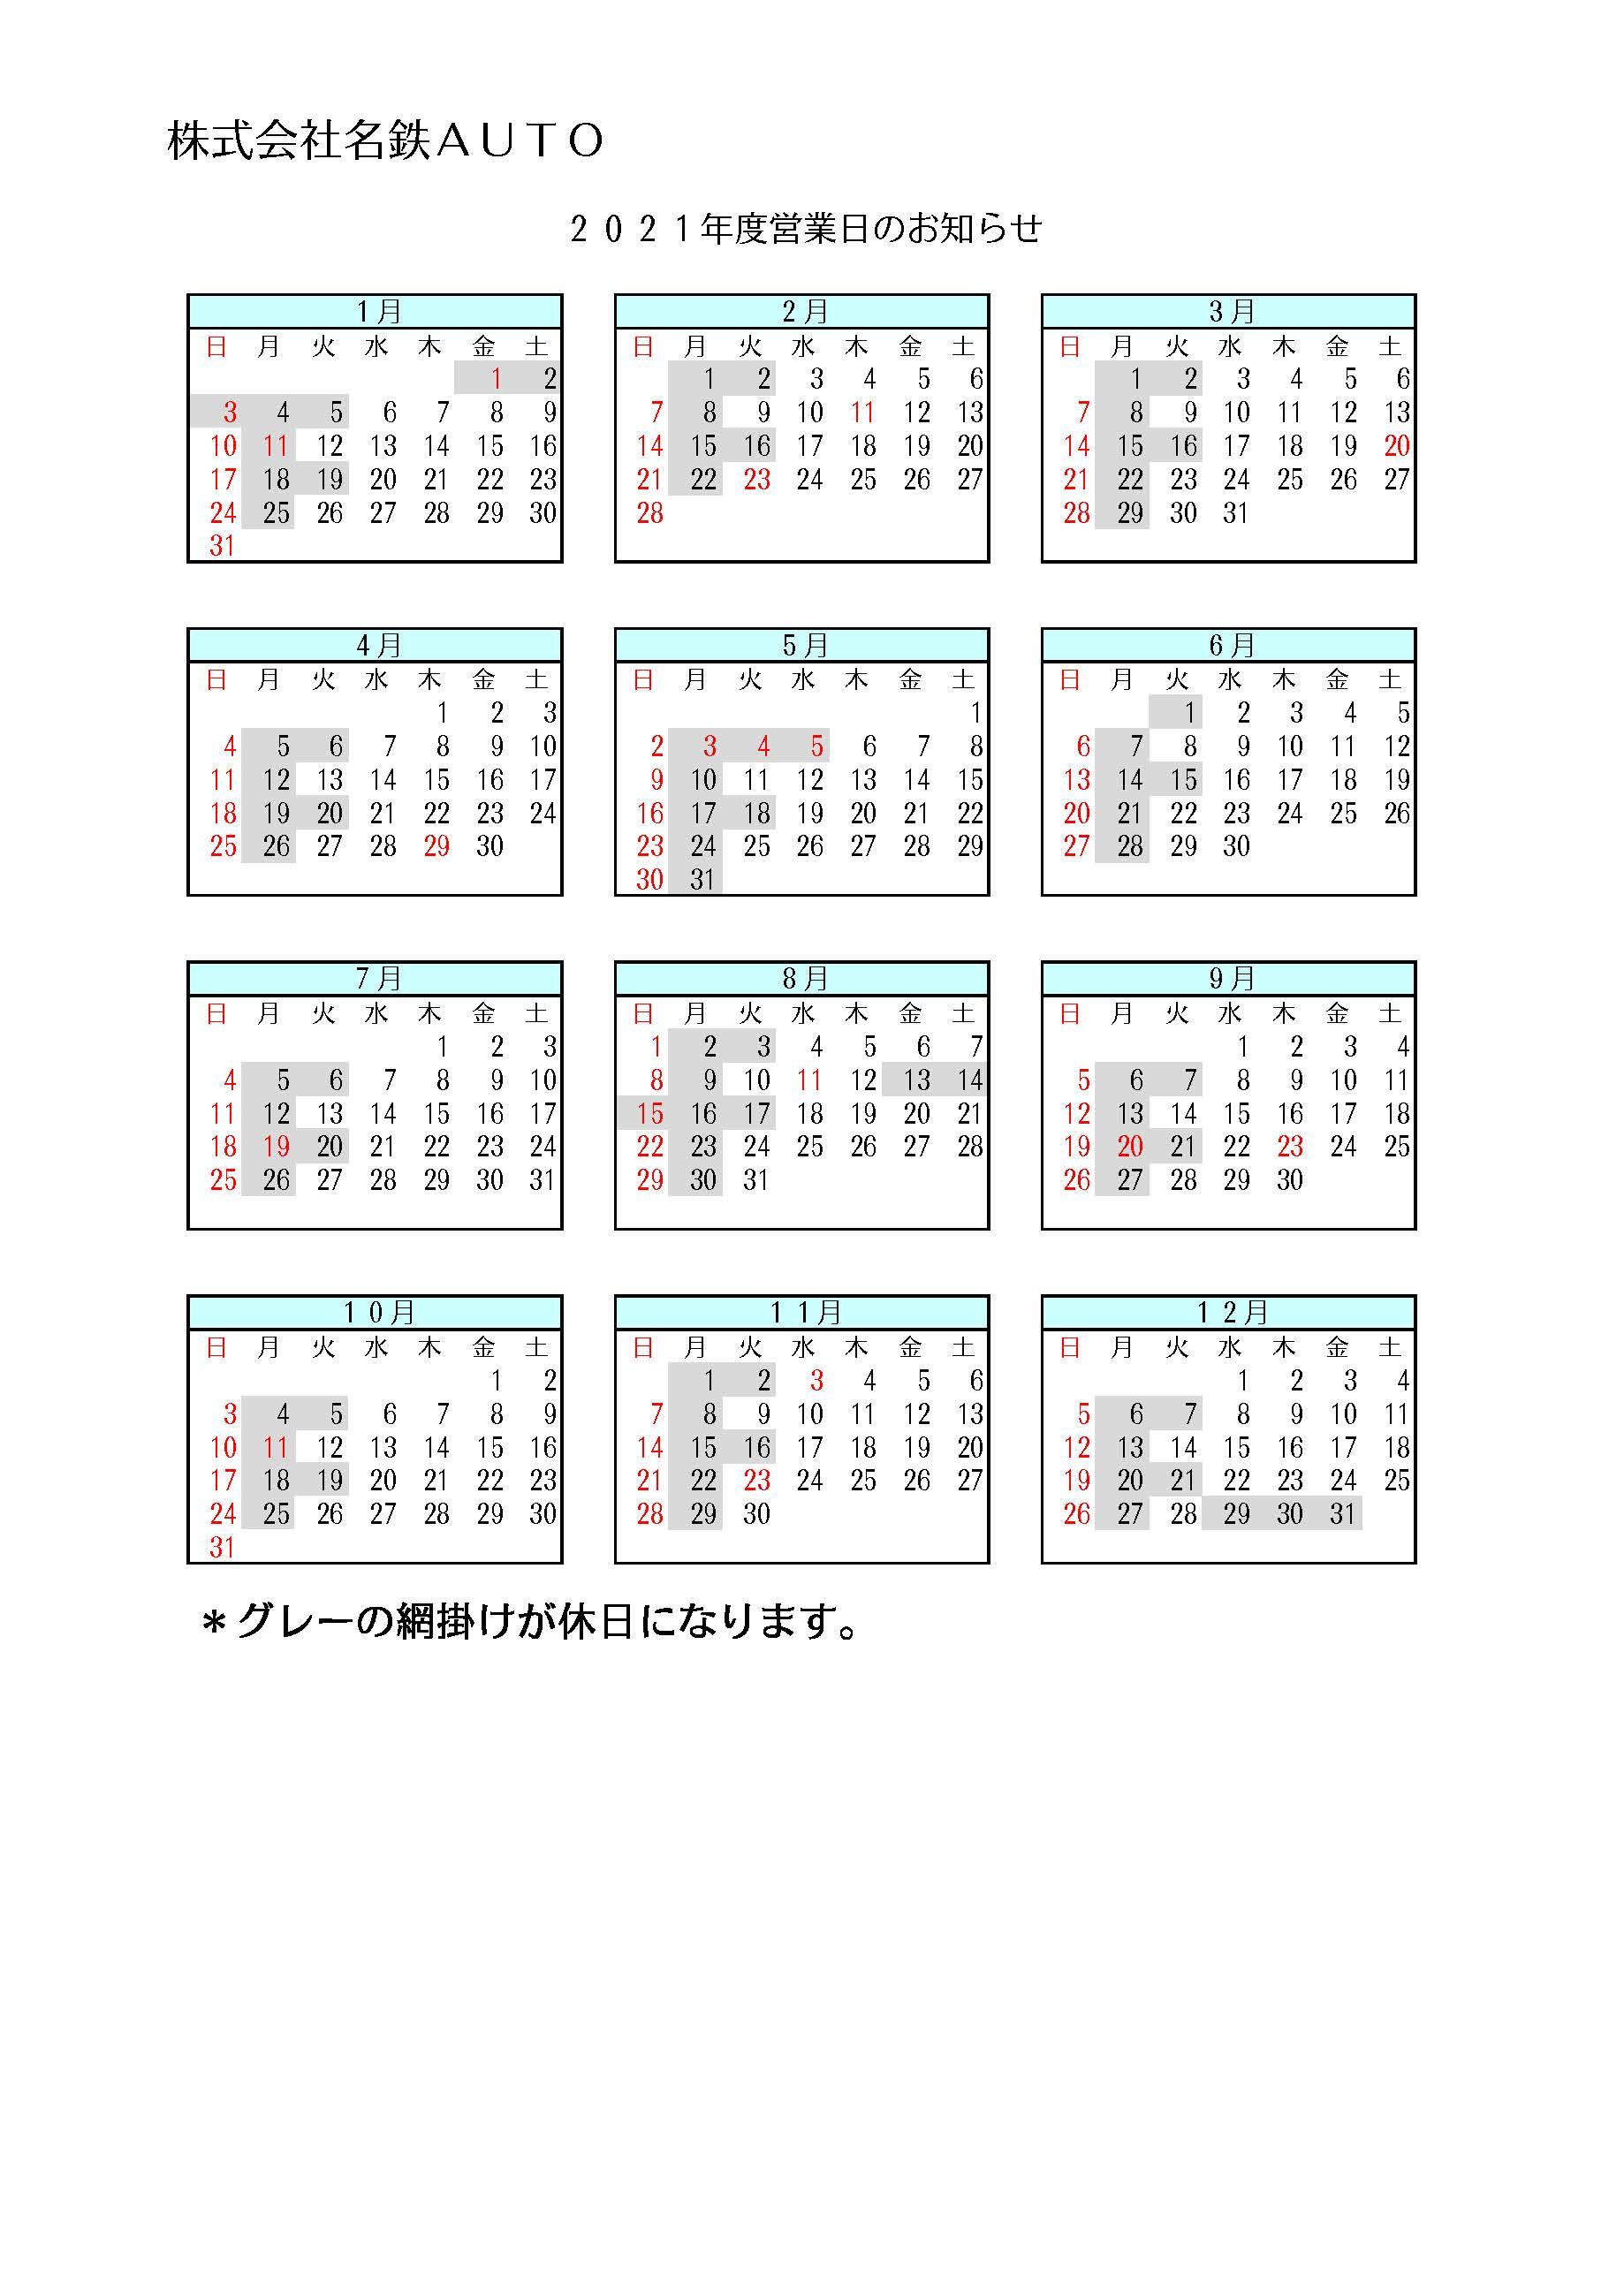 コピー2021年営業日カレンダー.jpg